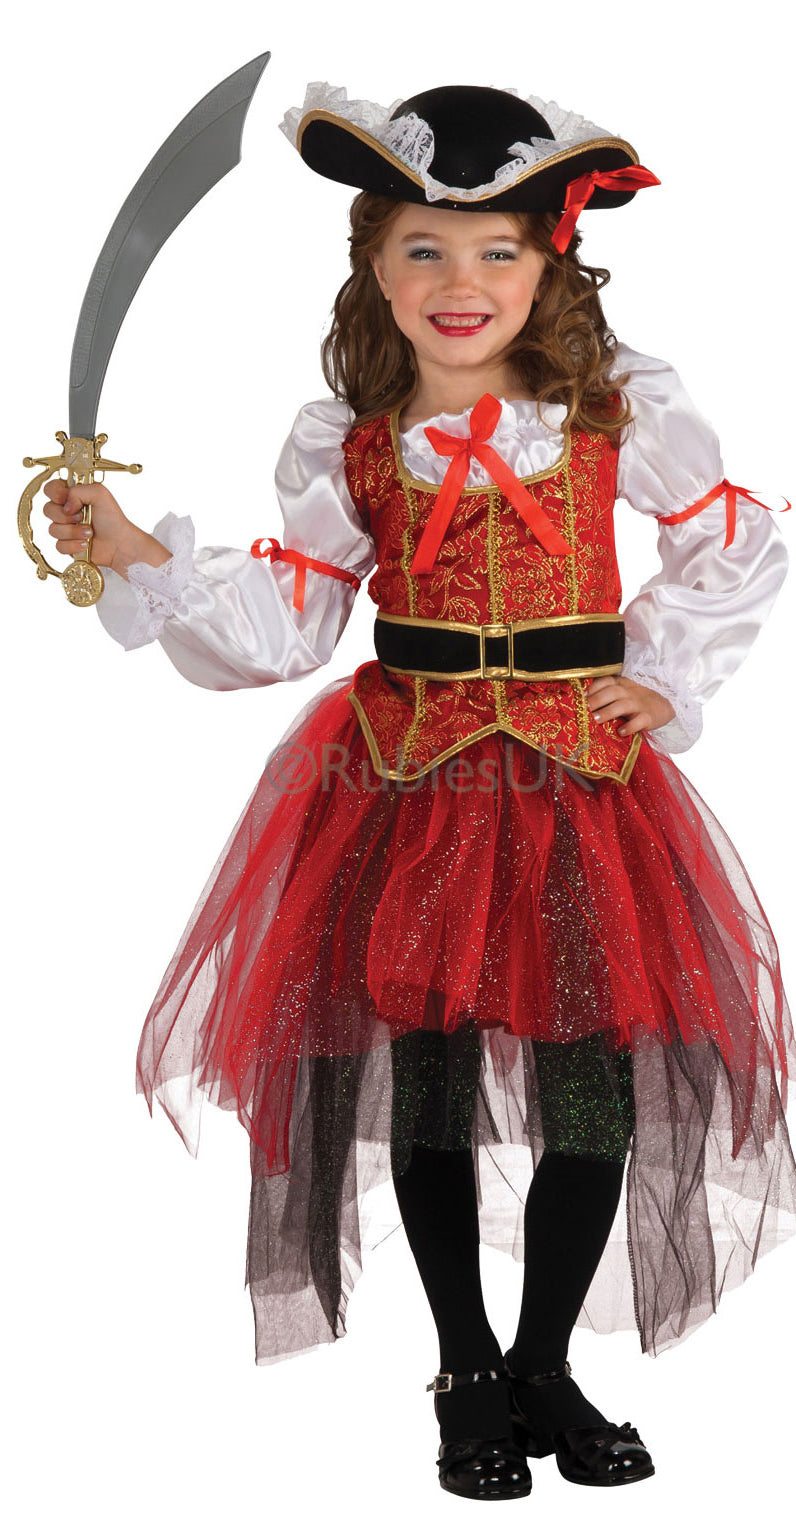 Princess of the Seas Costume